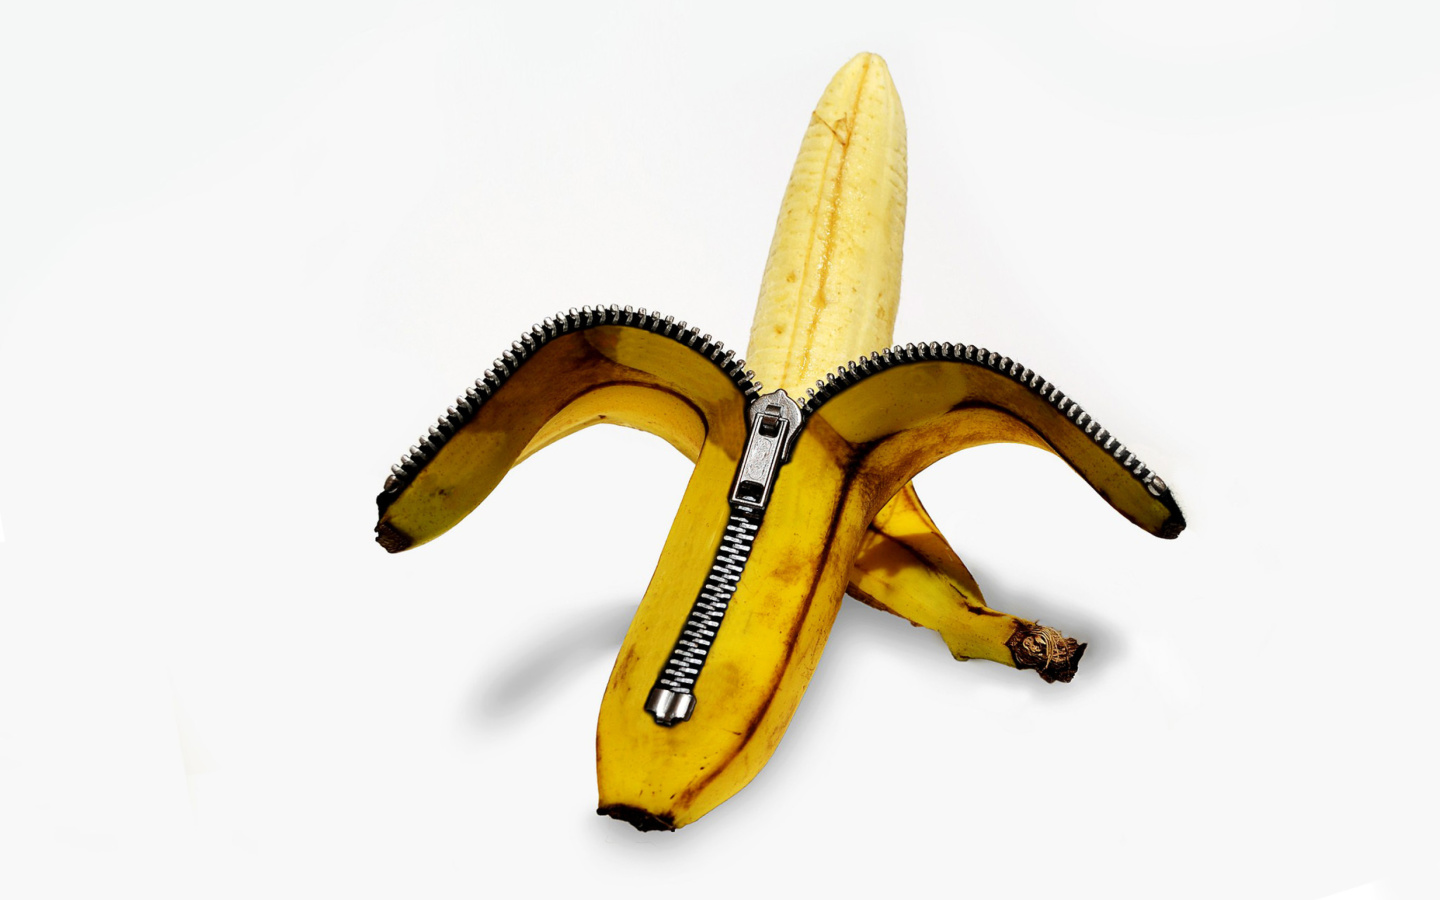 Funny banana as zipper screenshot #1 1440x900